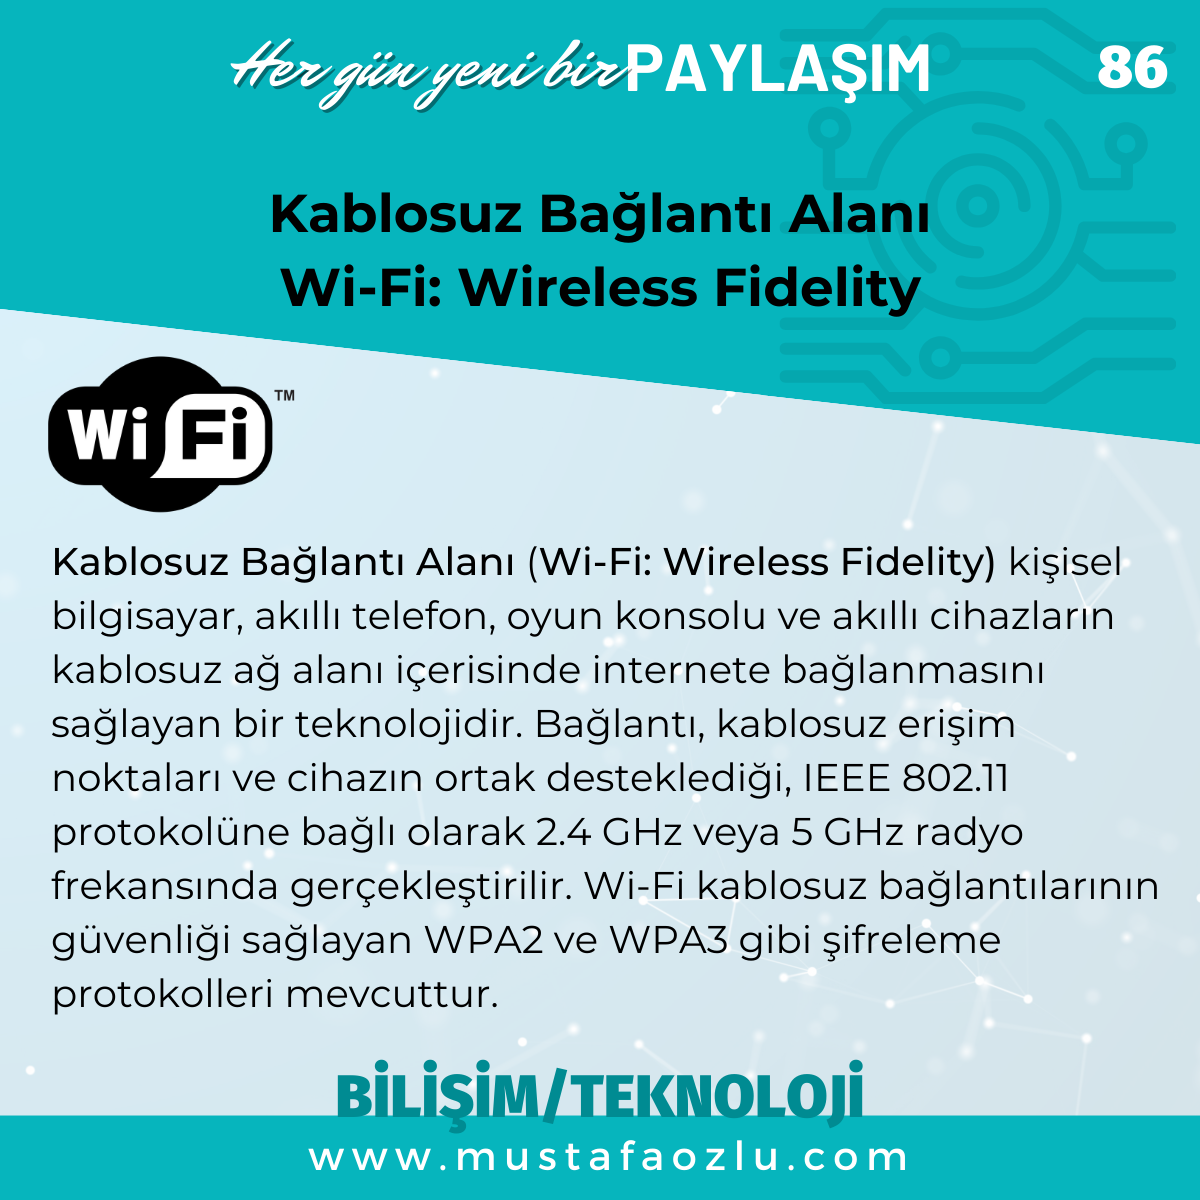 Kablosuz Bağlantı Alanı 
Wi-Fi: Wireless FidelityKablosuz Bağlantı Alanı
Wi-Fi: Wireless Fidelity - Mustafa ÖZLÜ